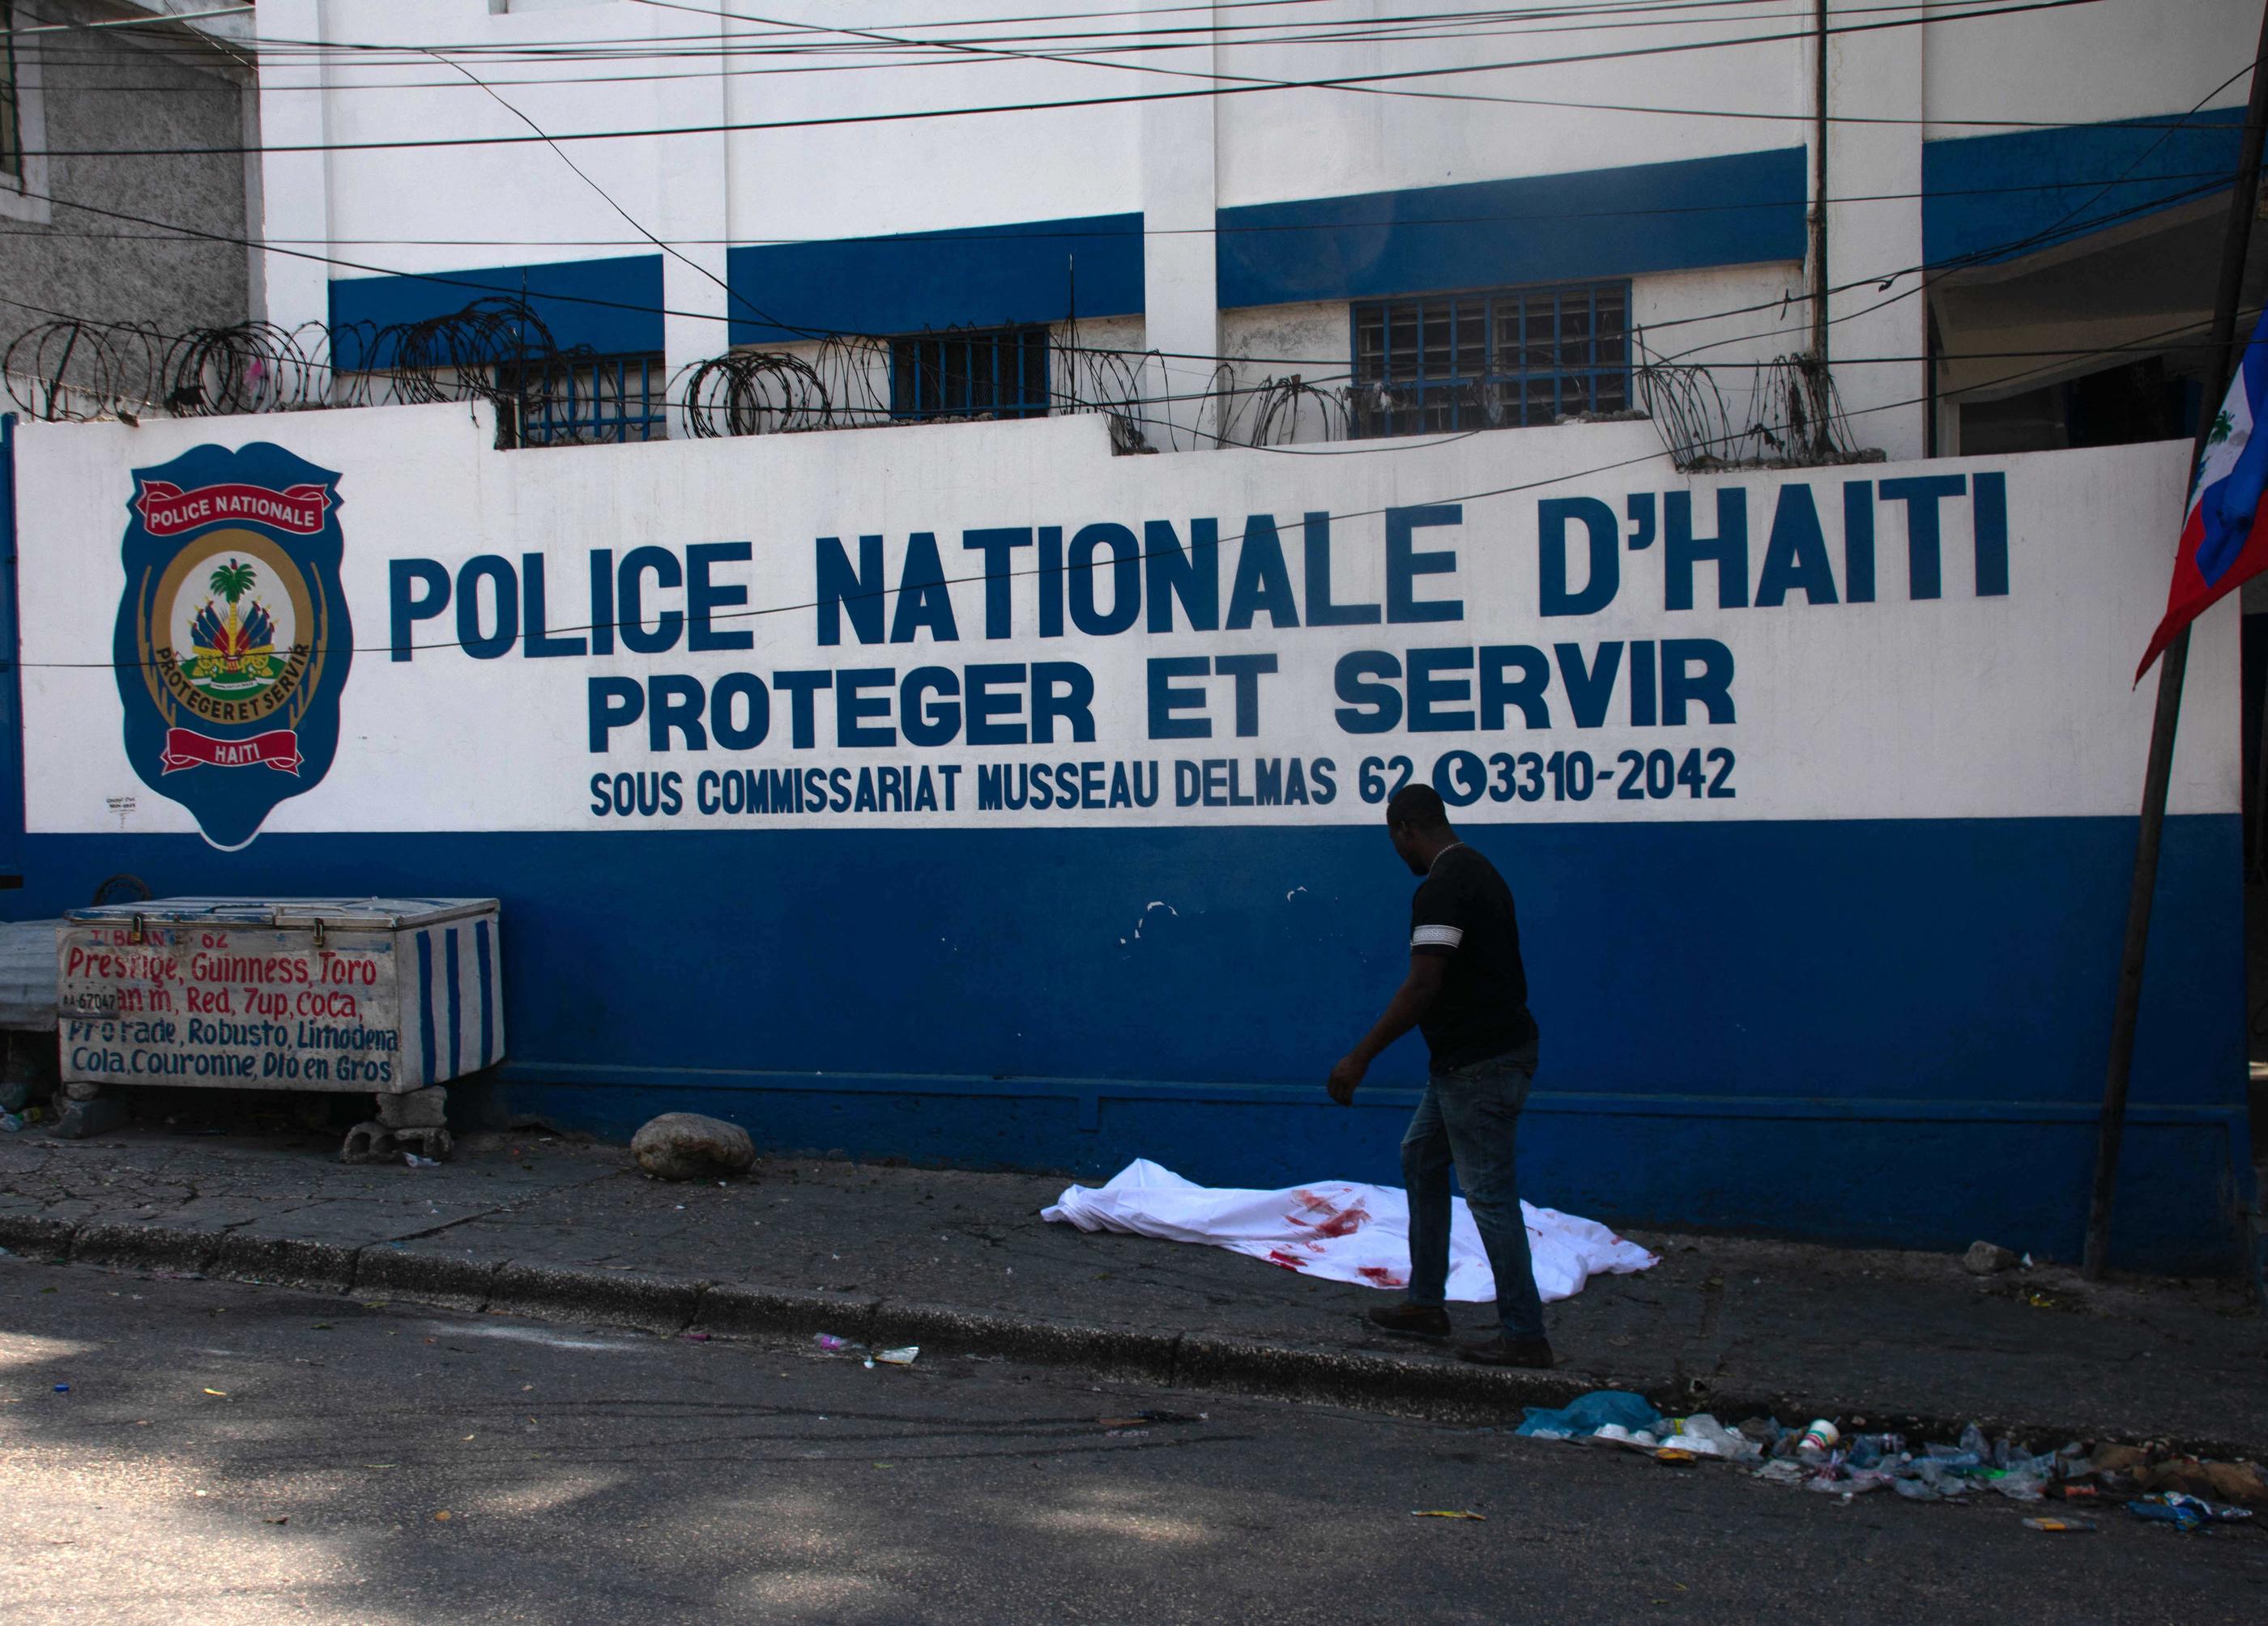 Les bandes criminelles s'en prennent depuis des semaines à des sites stratégiques du pays, dont plusieurs commissariats de police. (Illustration) AFP/Clarens Siffroy